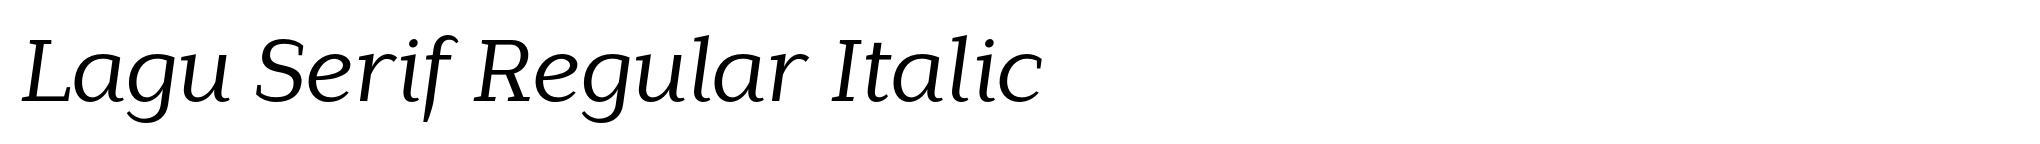 Lagu Serif Regular Italic image